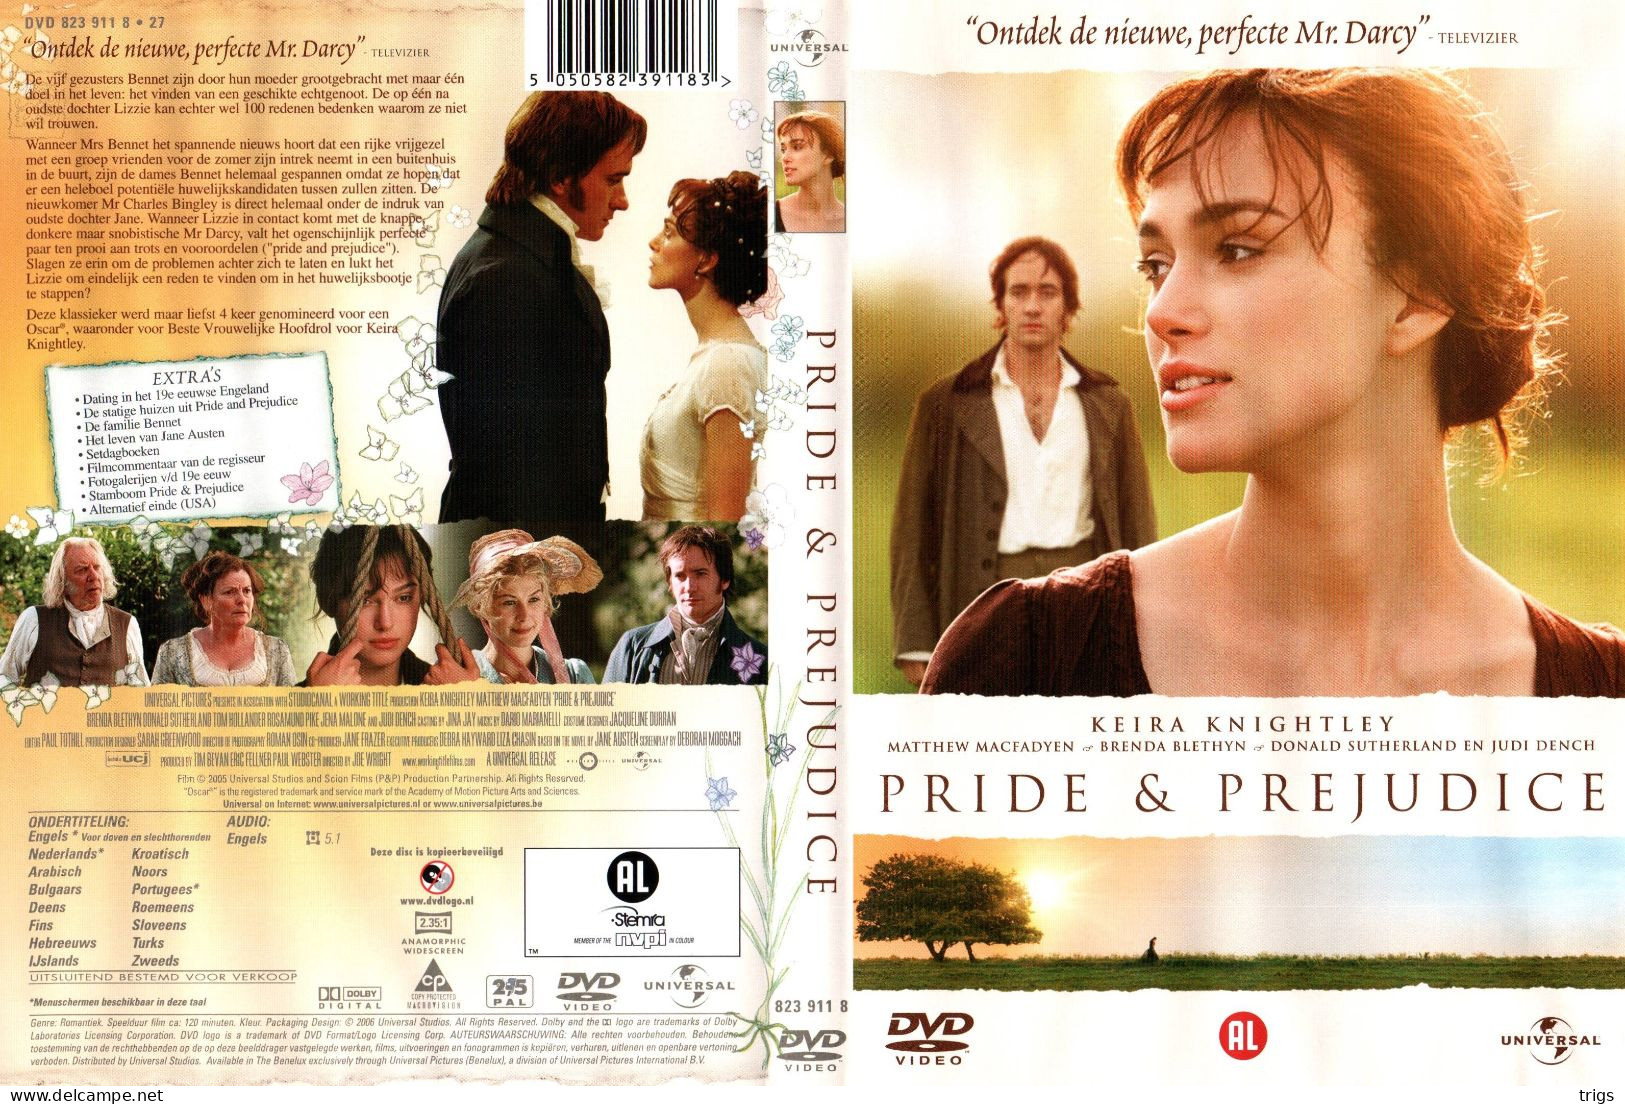 DVD - Pride & Prejudice - Drama